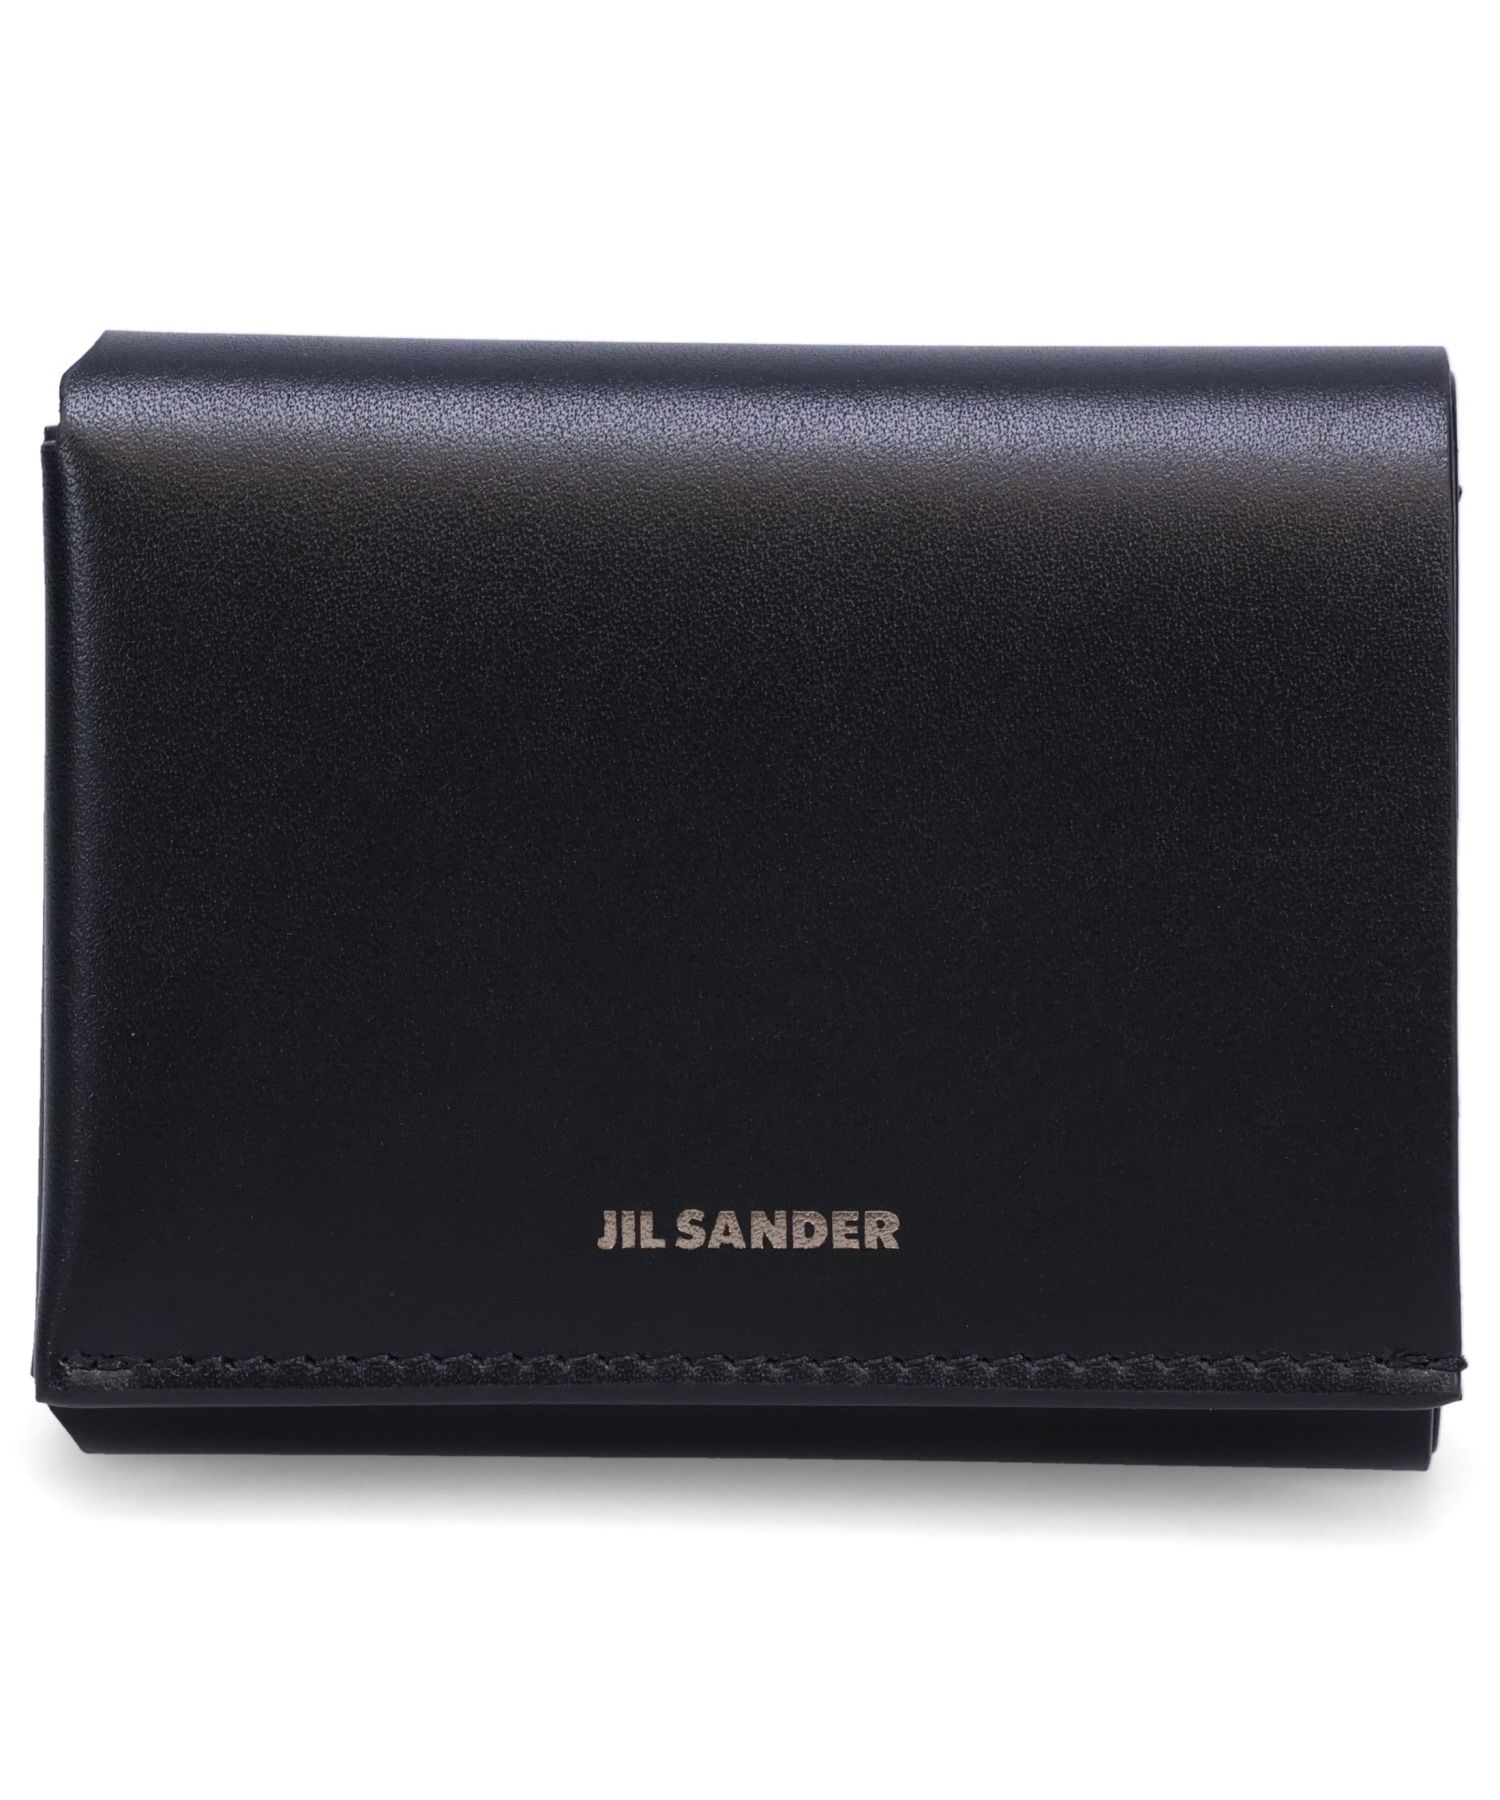 国内正規品 jil sander origami wallet